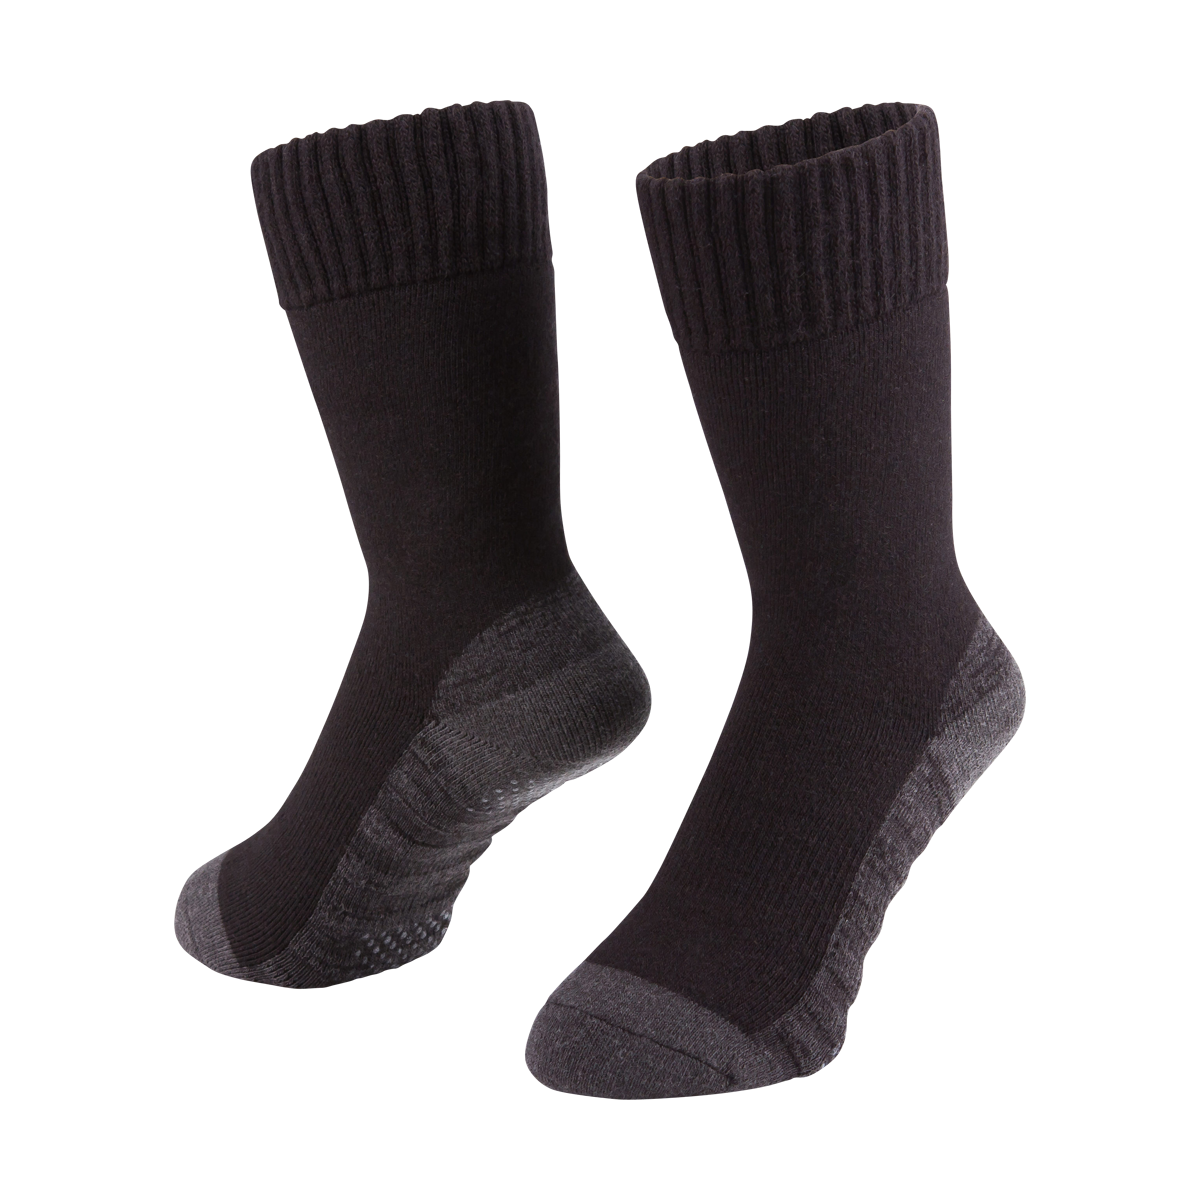 Heated Unisex Wool Socks